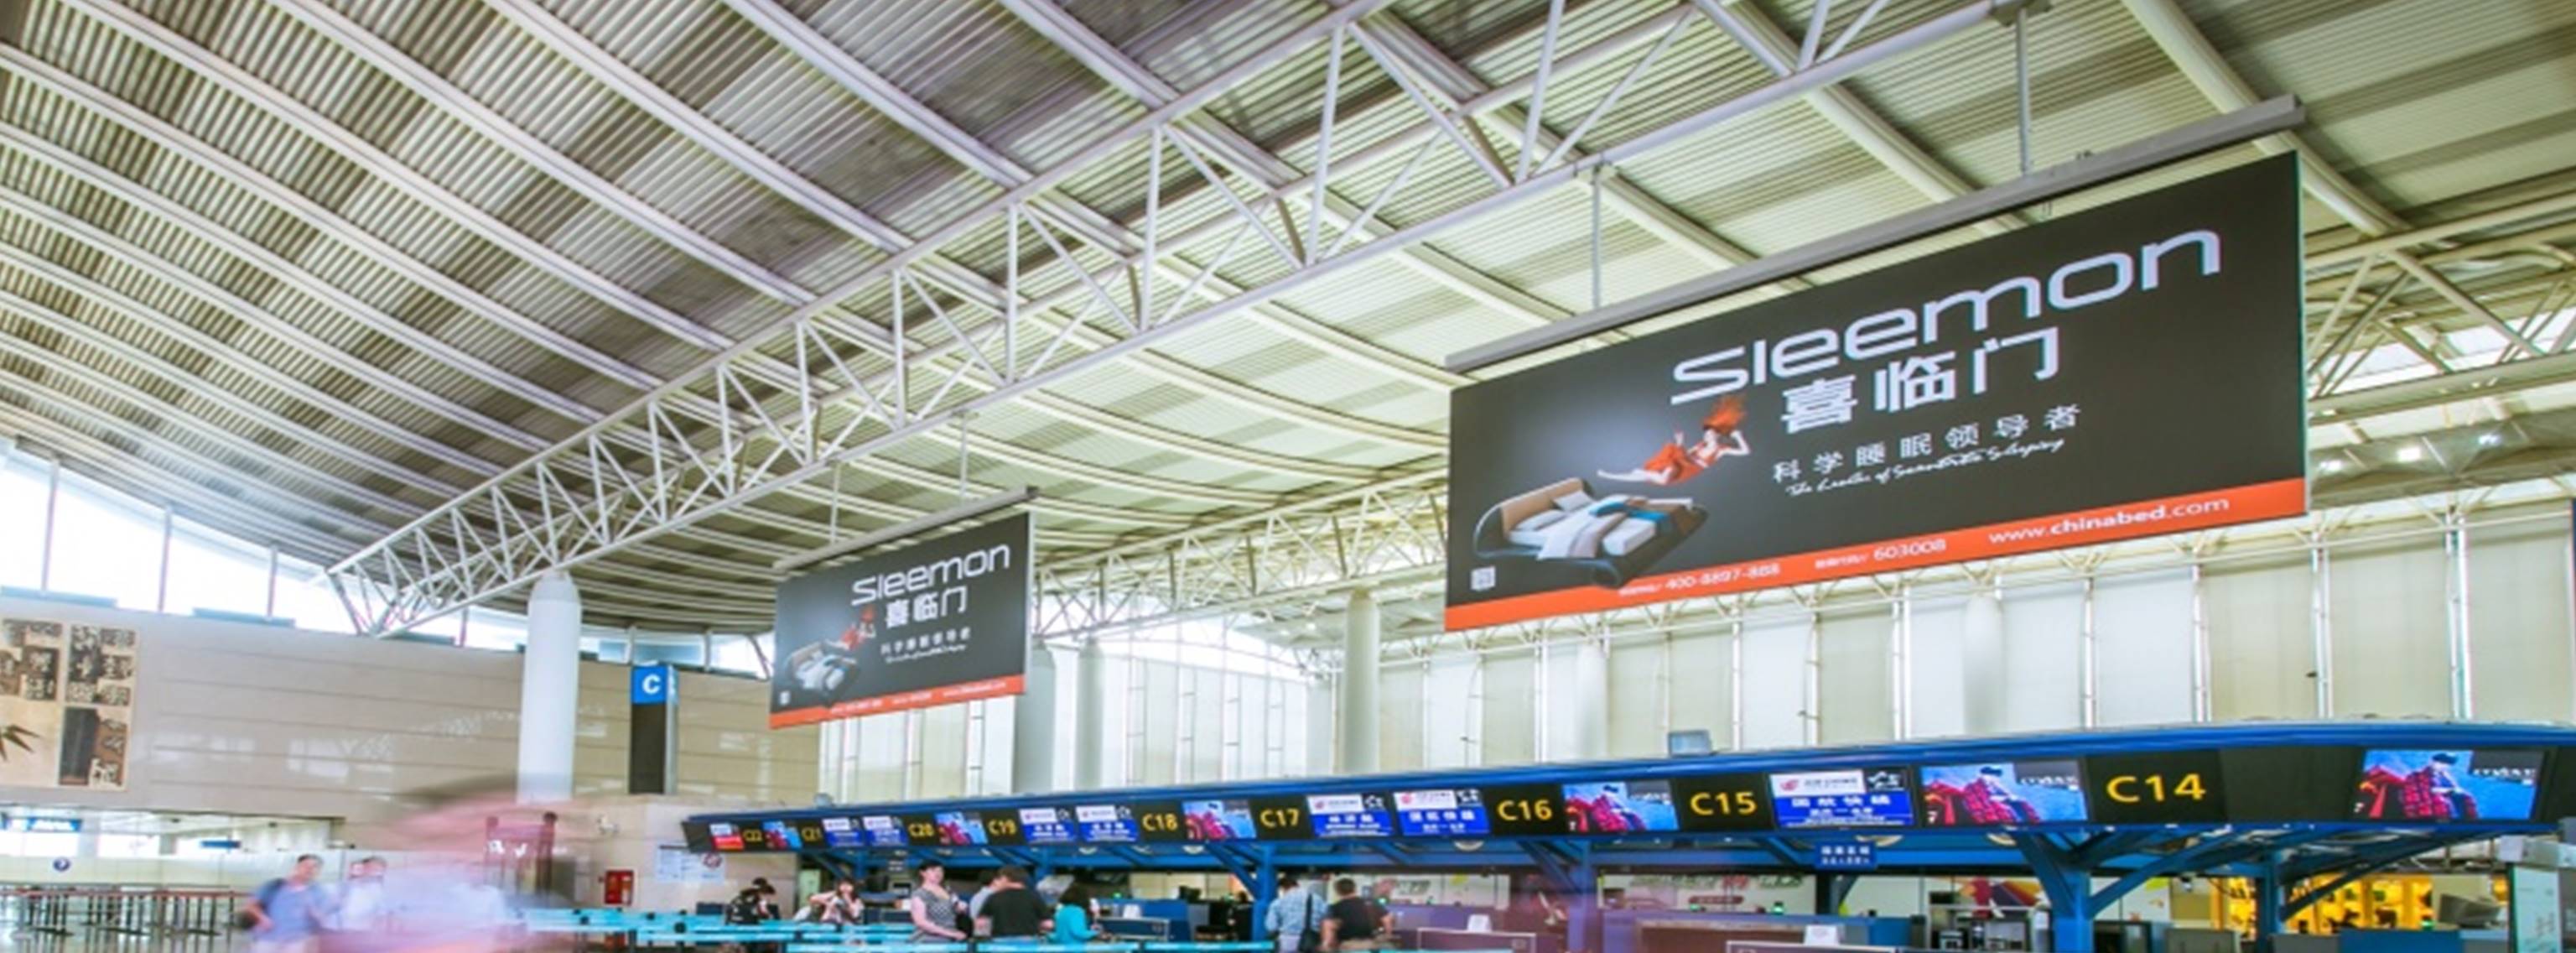 杭州萧山机场广告-T1办票岛上方挂旗DDG01-06